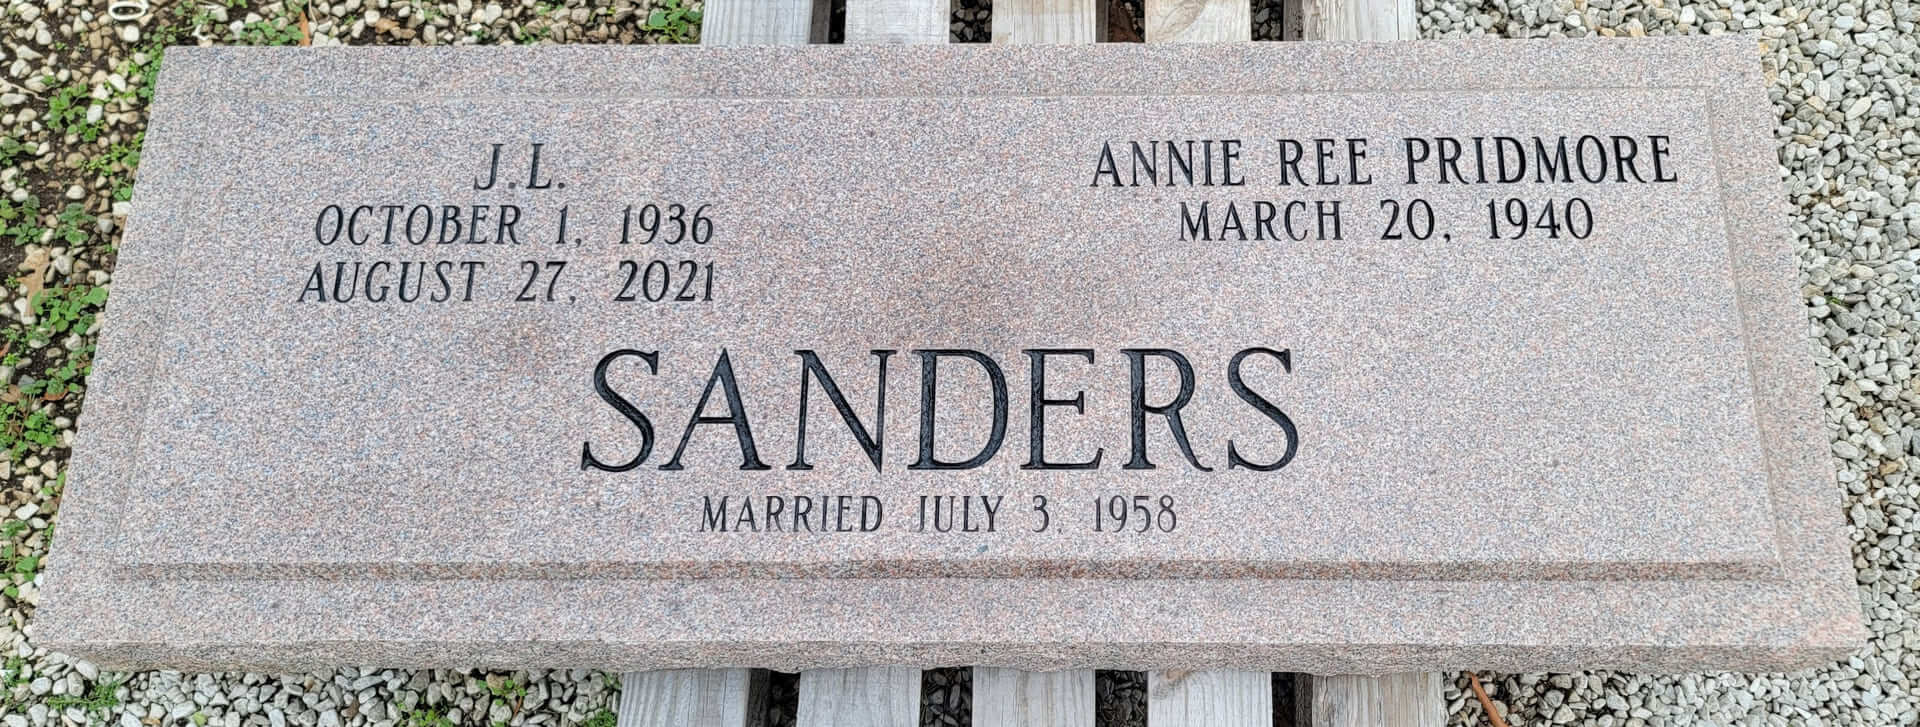 Sanders J.L and Annie Ree Pridmore Memorial Slab